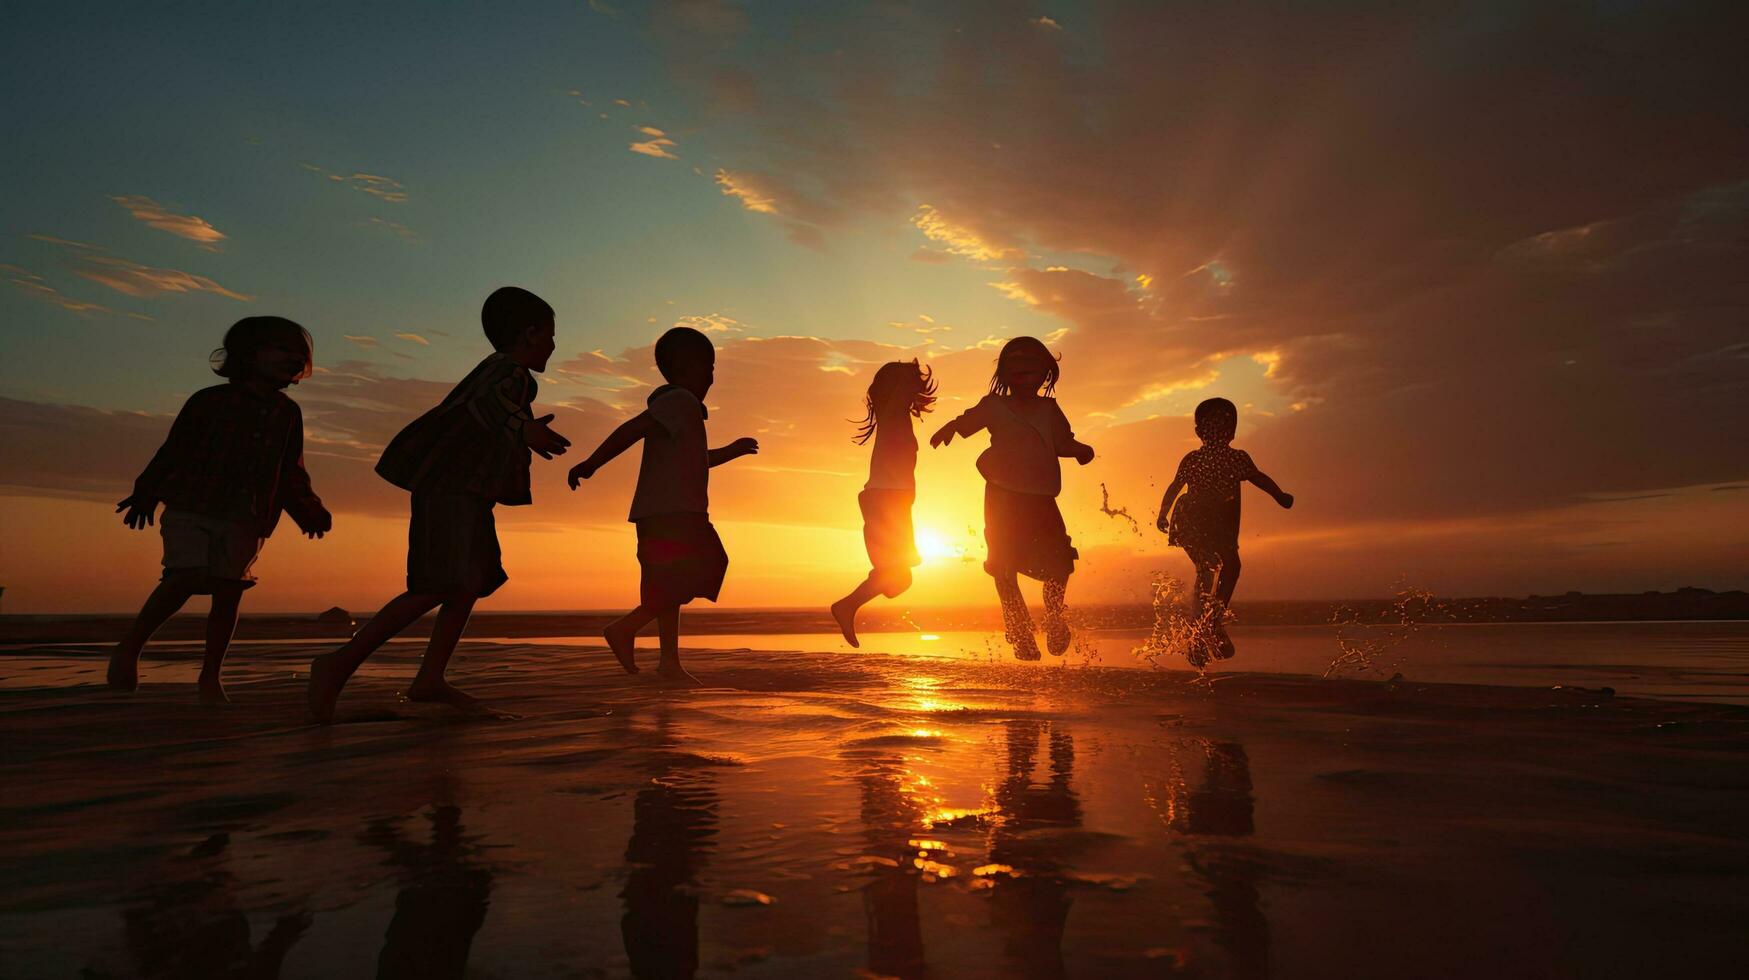 Kinder genießen das Sonnenuntergang Silhouetten voll von Freiheit und Glück foto